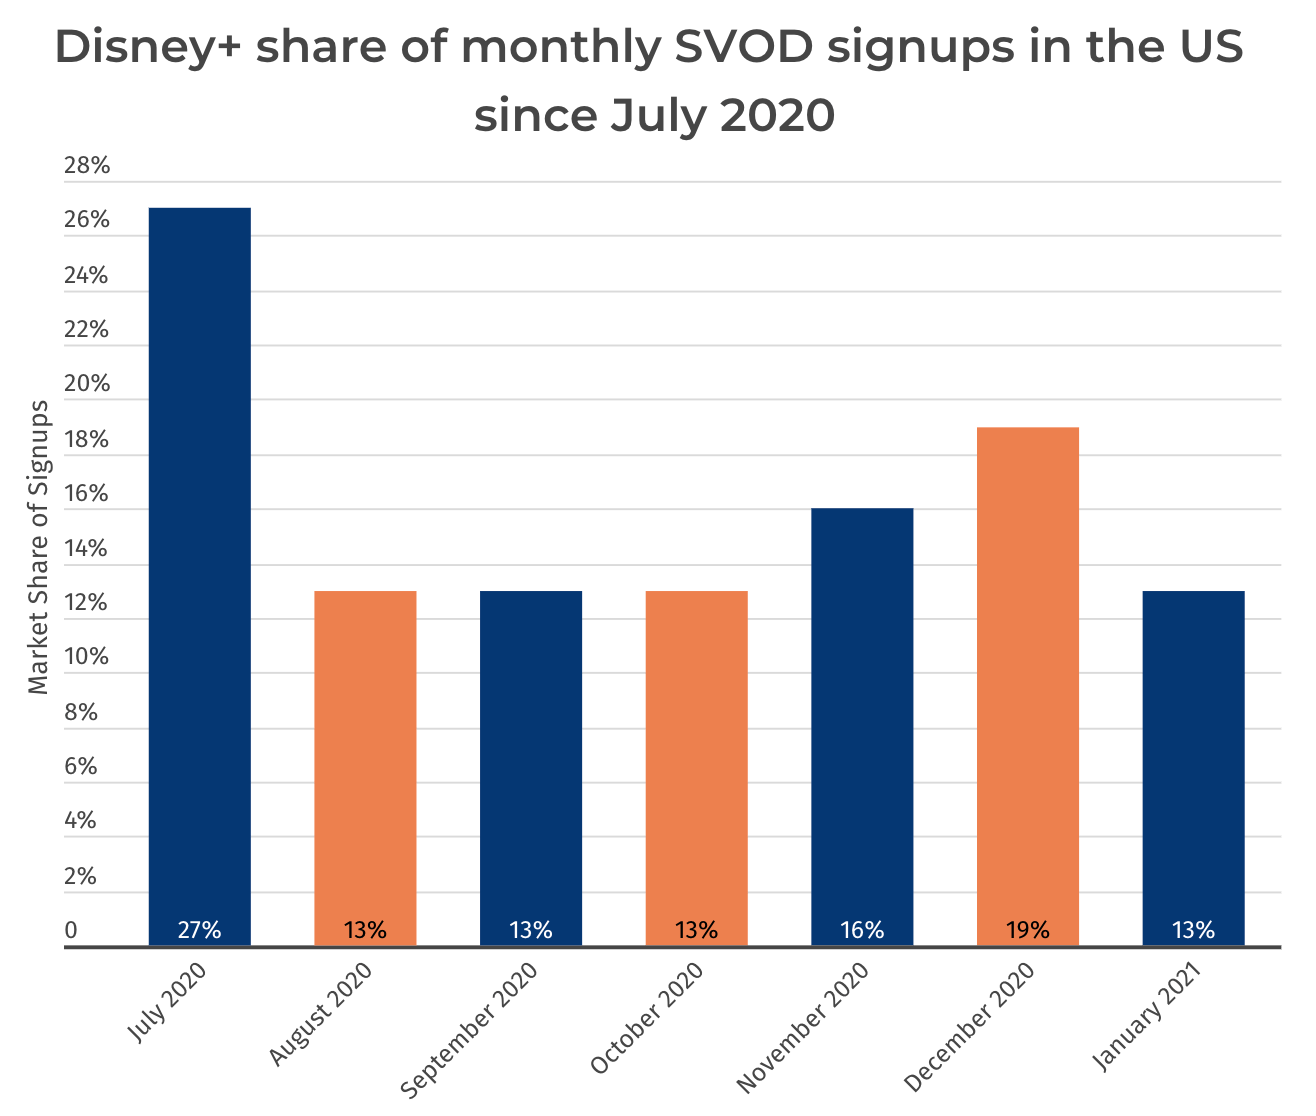 ดิสนีย์พลัสคิดเป็น 13% ของตลาด SVOD ในสหรัฐอเมริกา